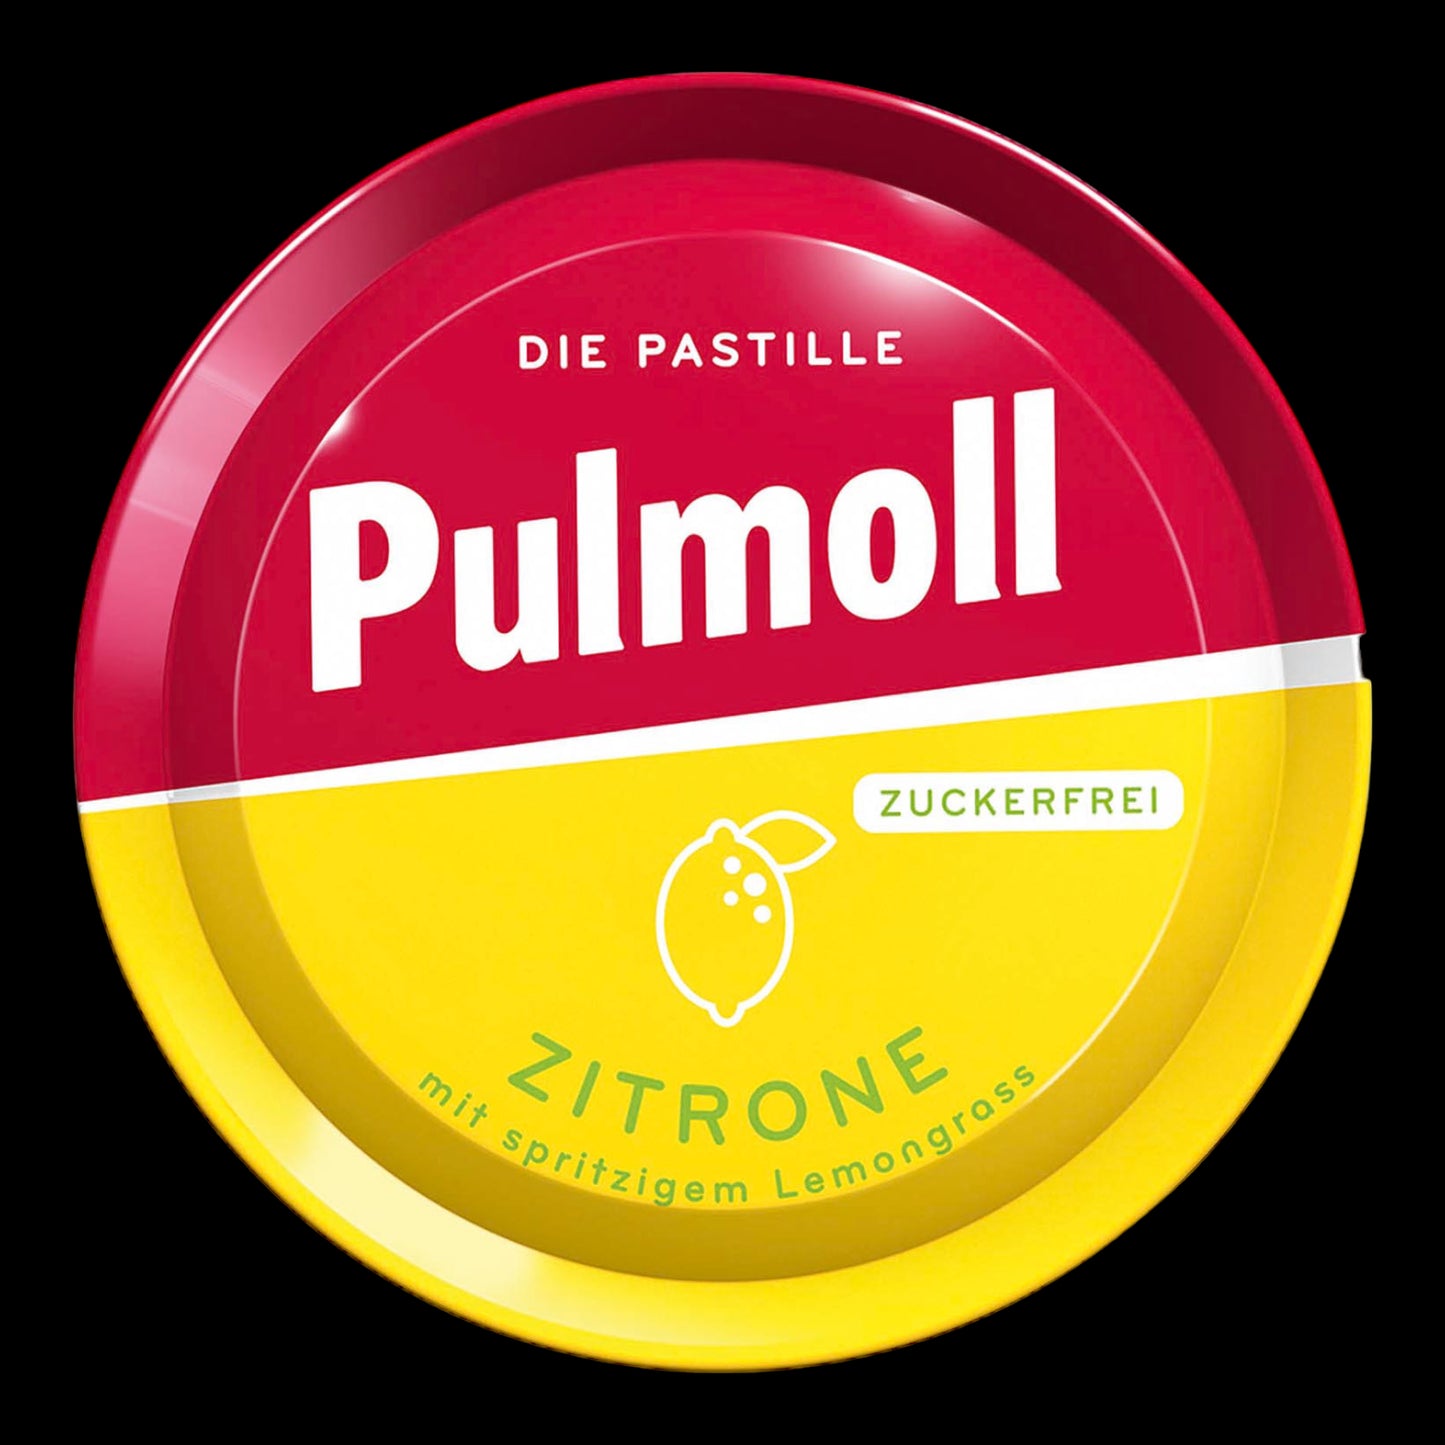 Pulmoll Zitrone zuckerfrei 50g